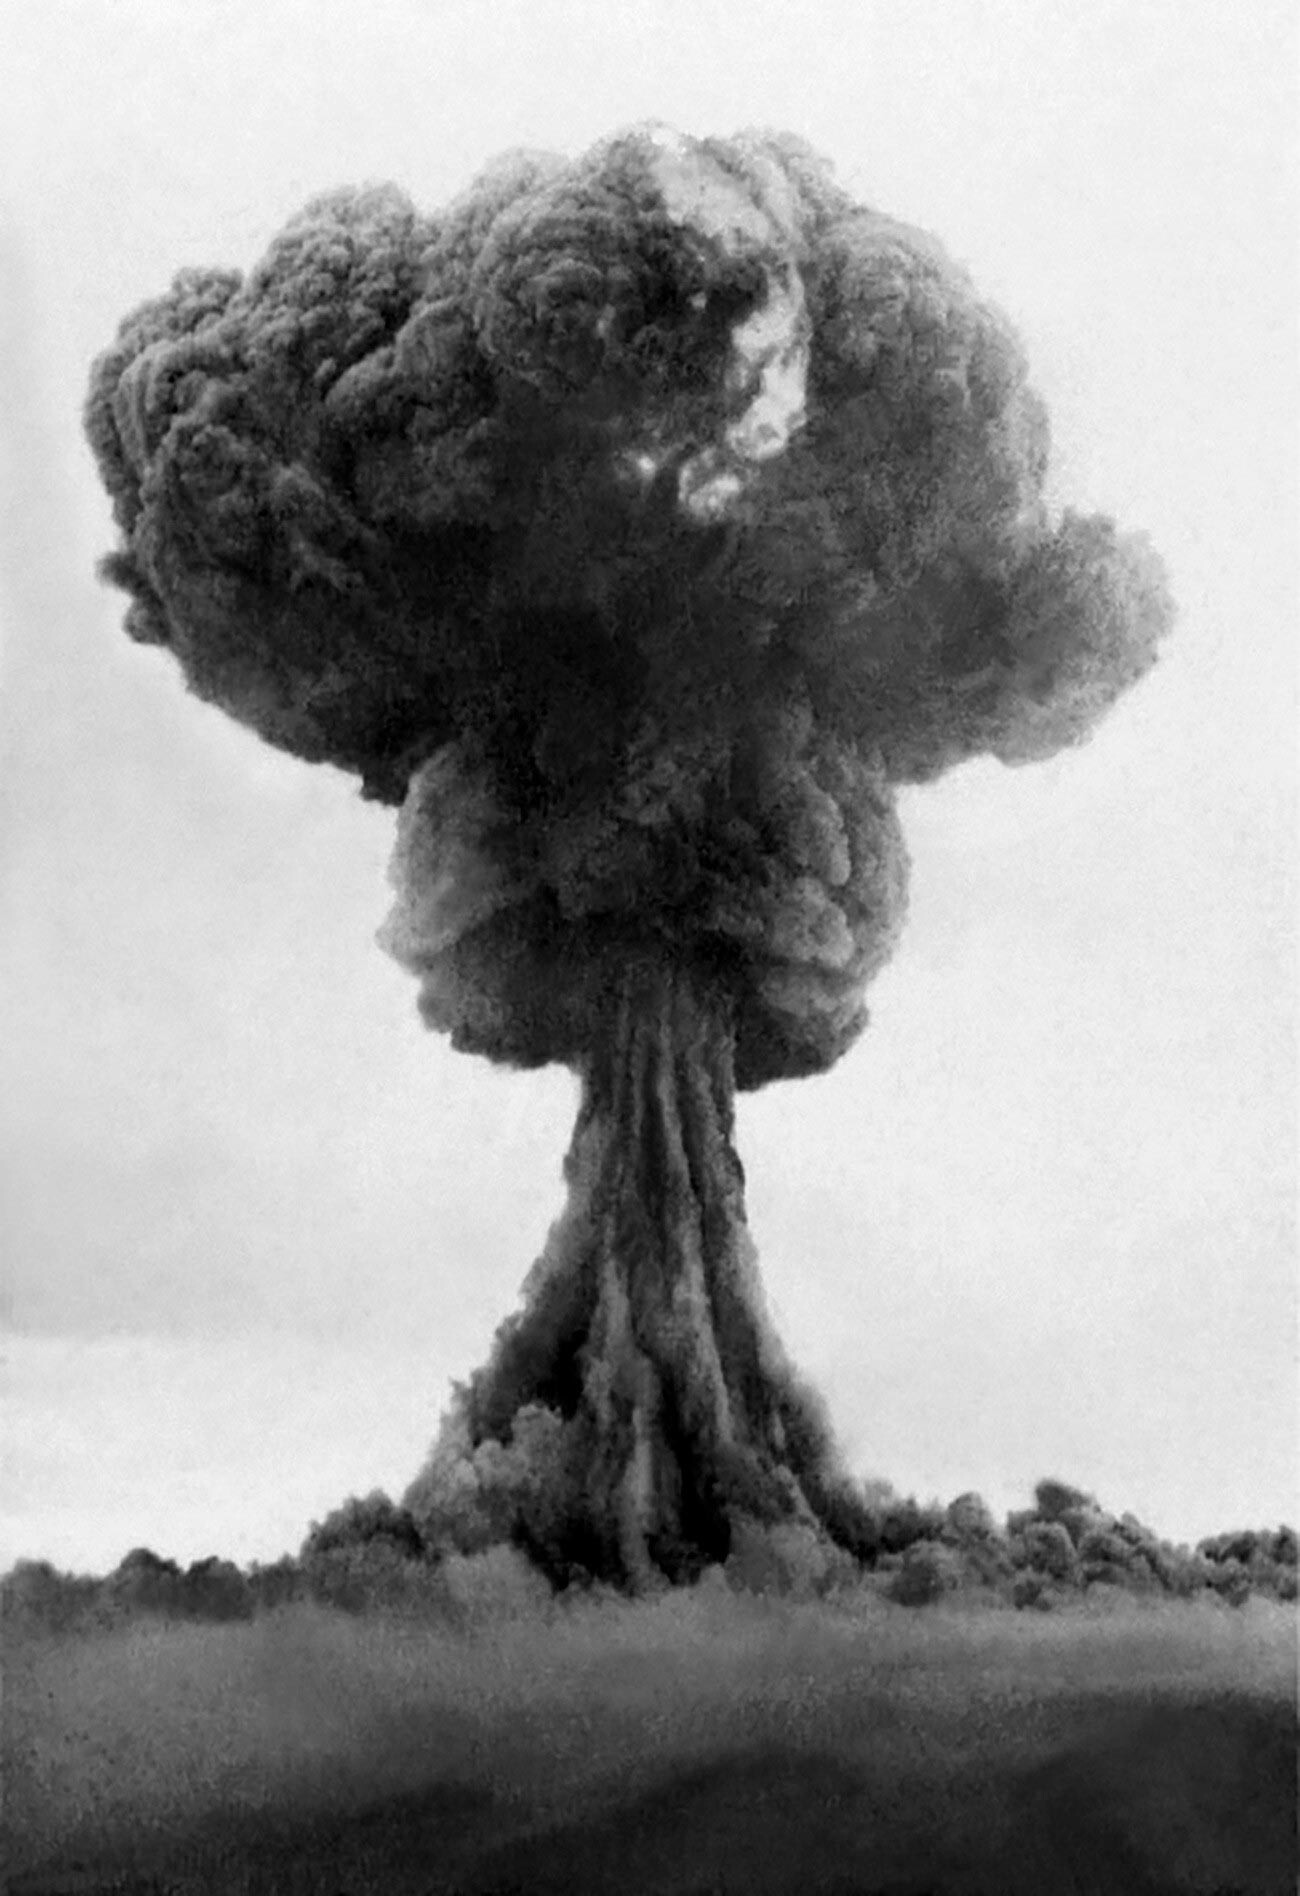 Gobasti oblak po eksploziji prve sovjetske atomske bombe RDS-1 leta 1949